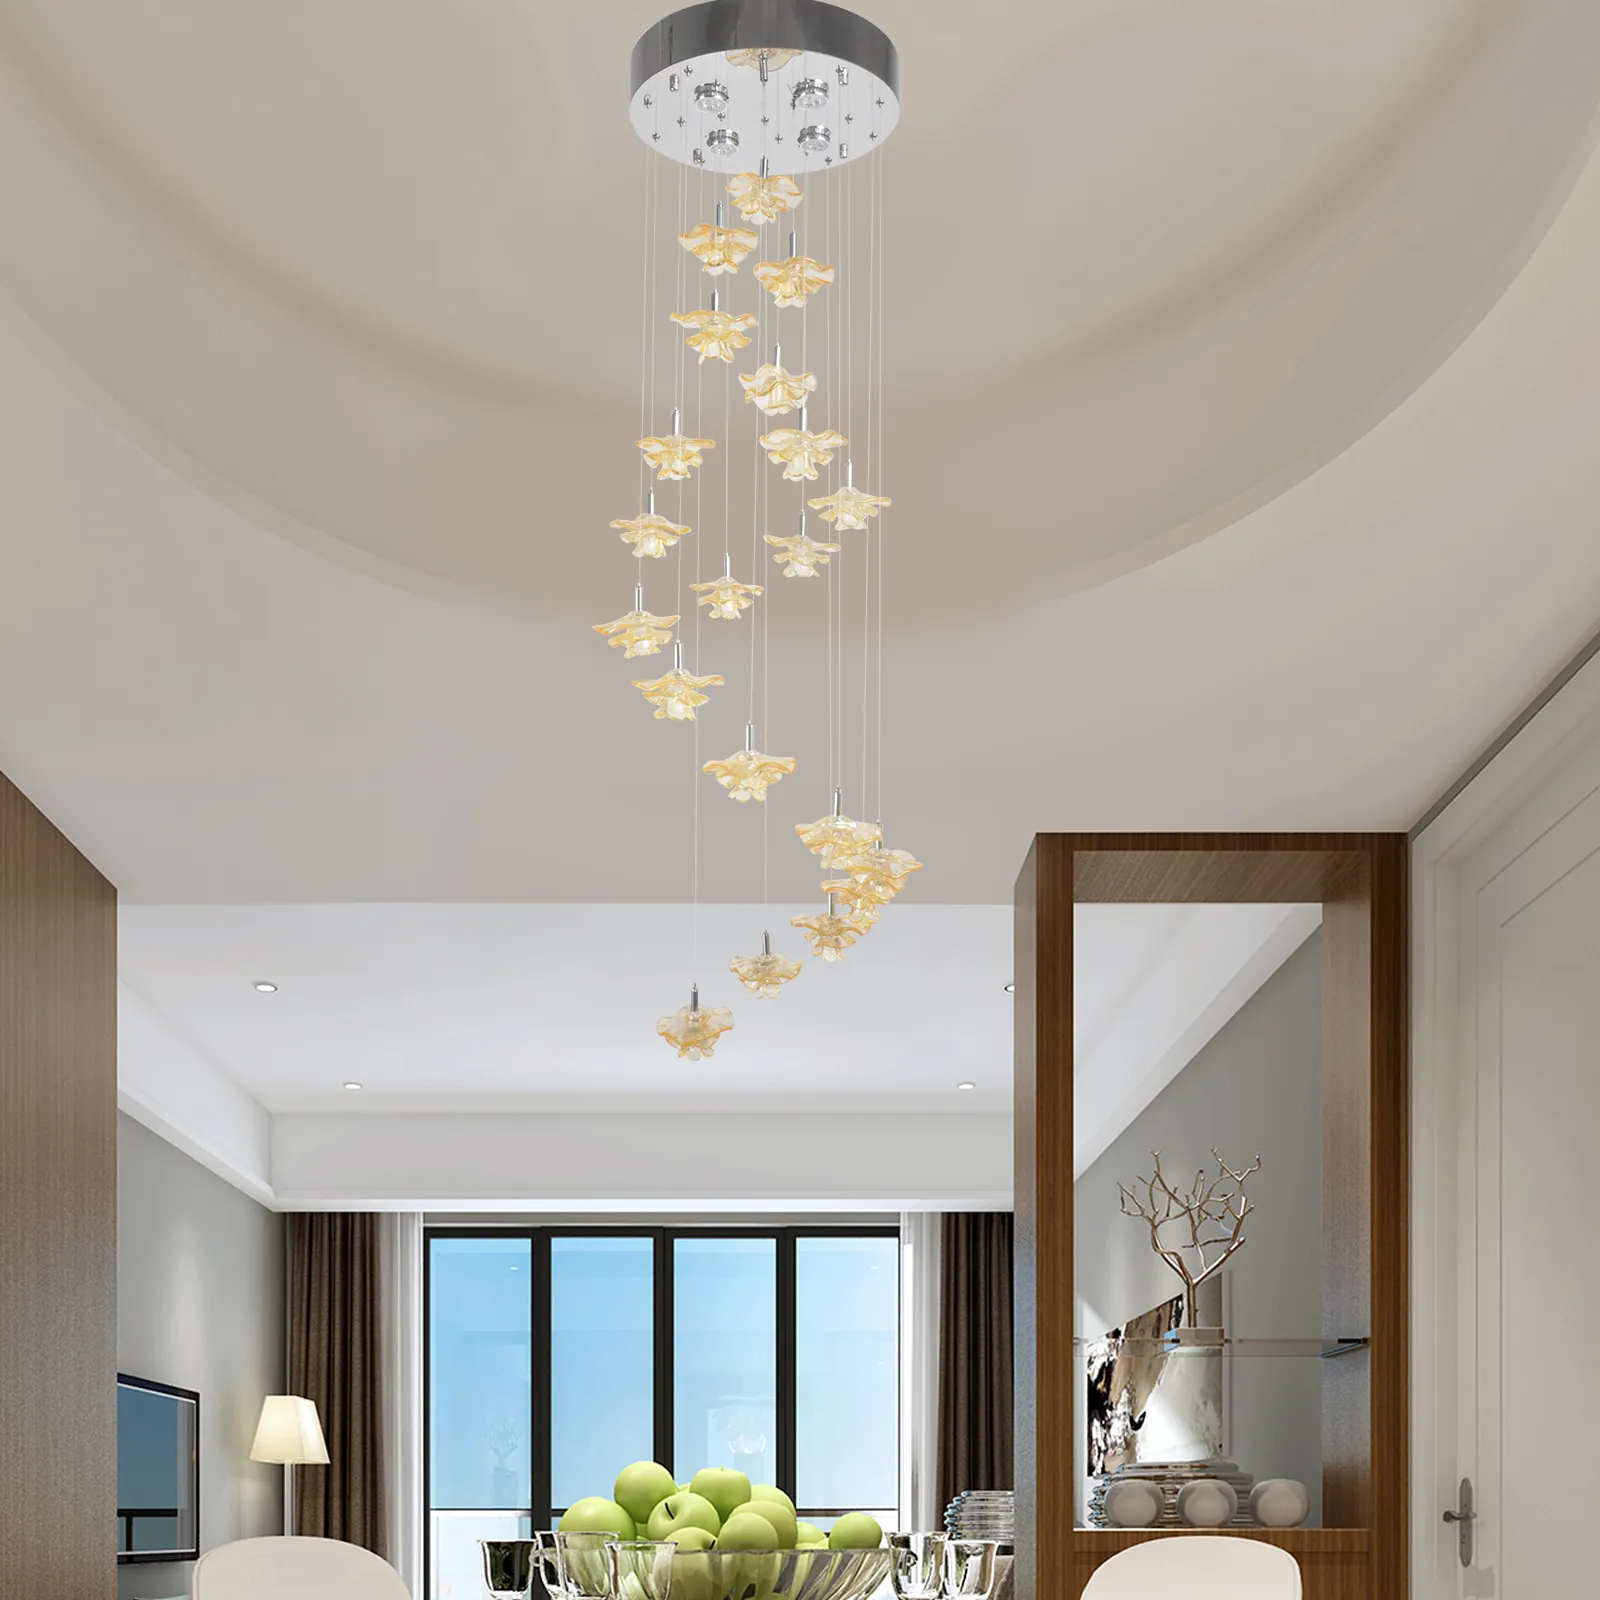 Потолочная лампа Вращайте легкое освещение в помещении для дома люстры золотой цветок подвеска для гостиной столовой Новый дизайн реалистичная форма